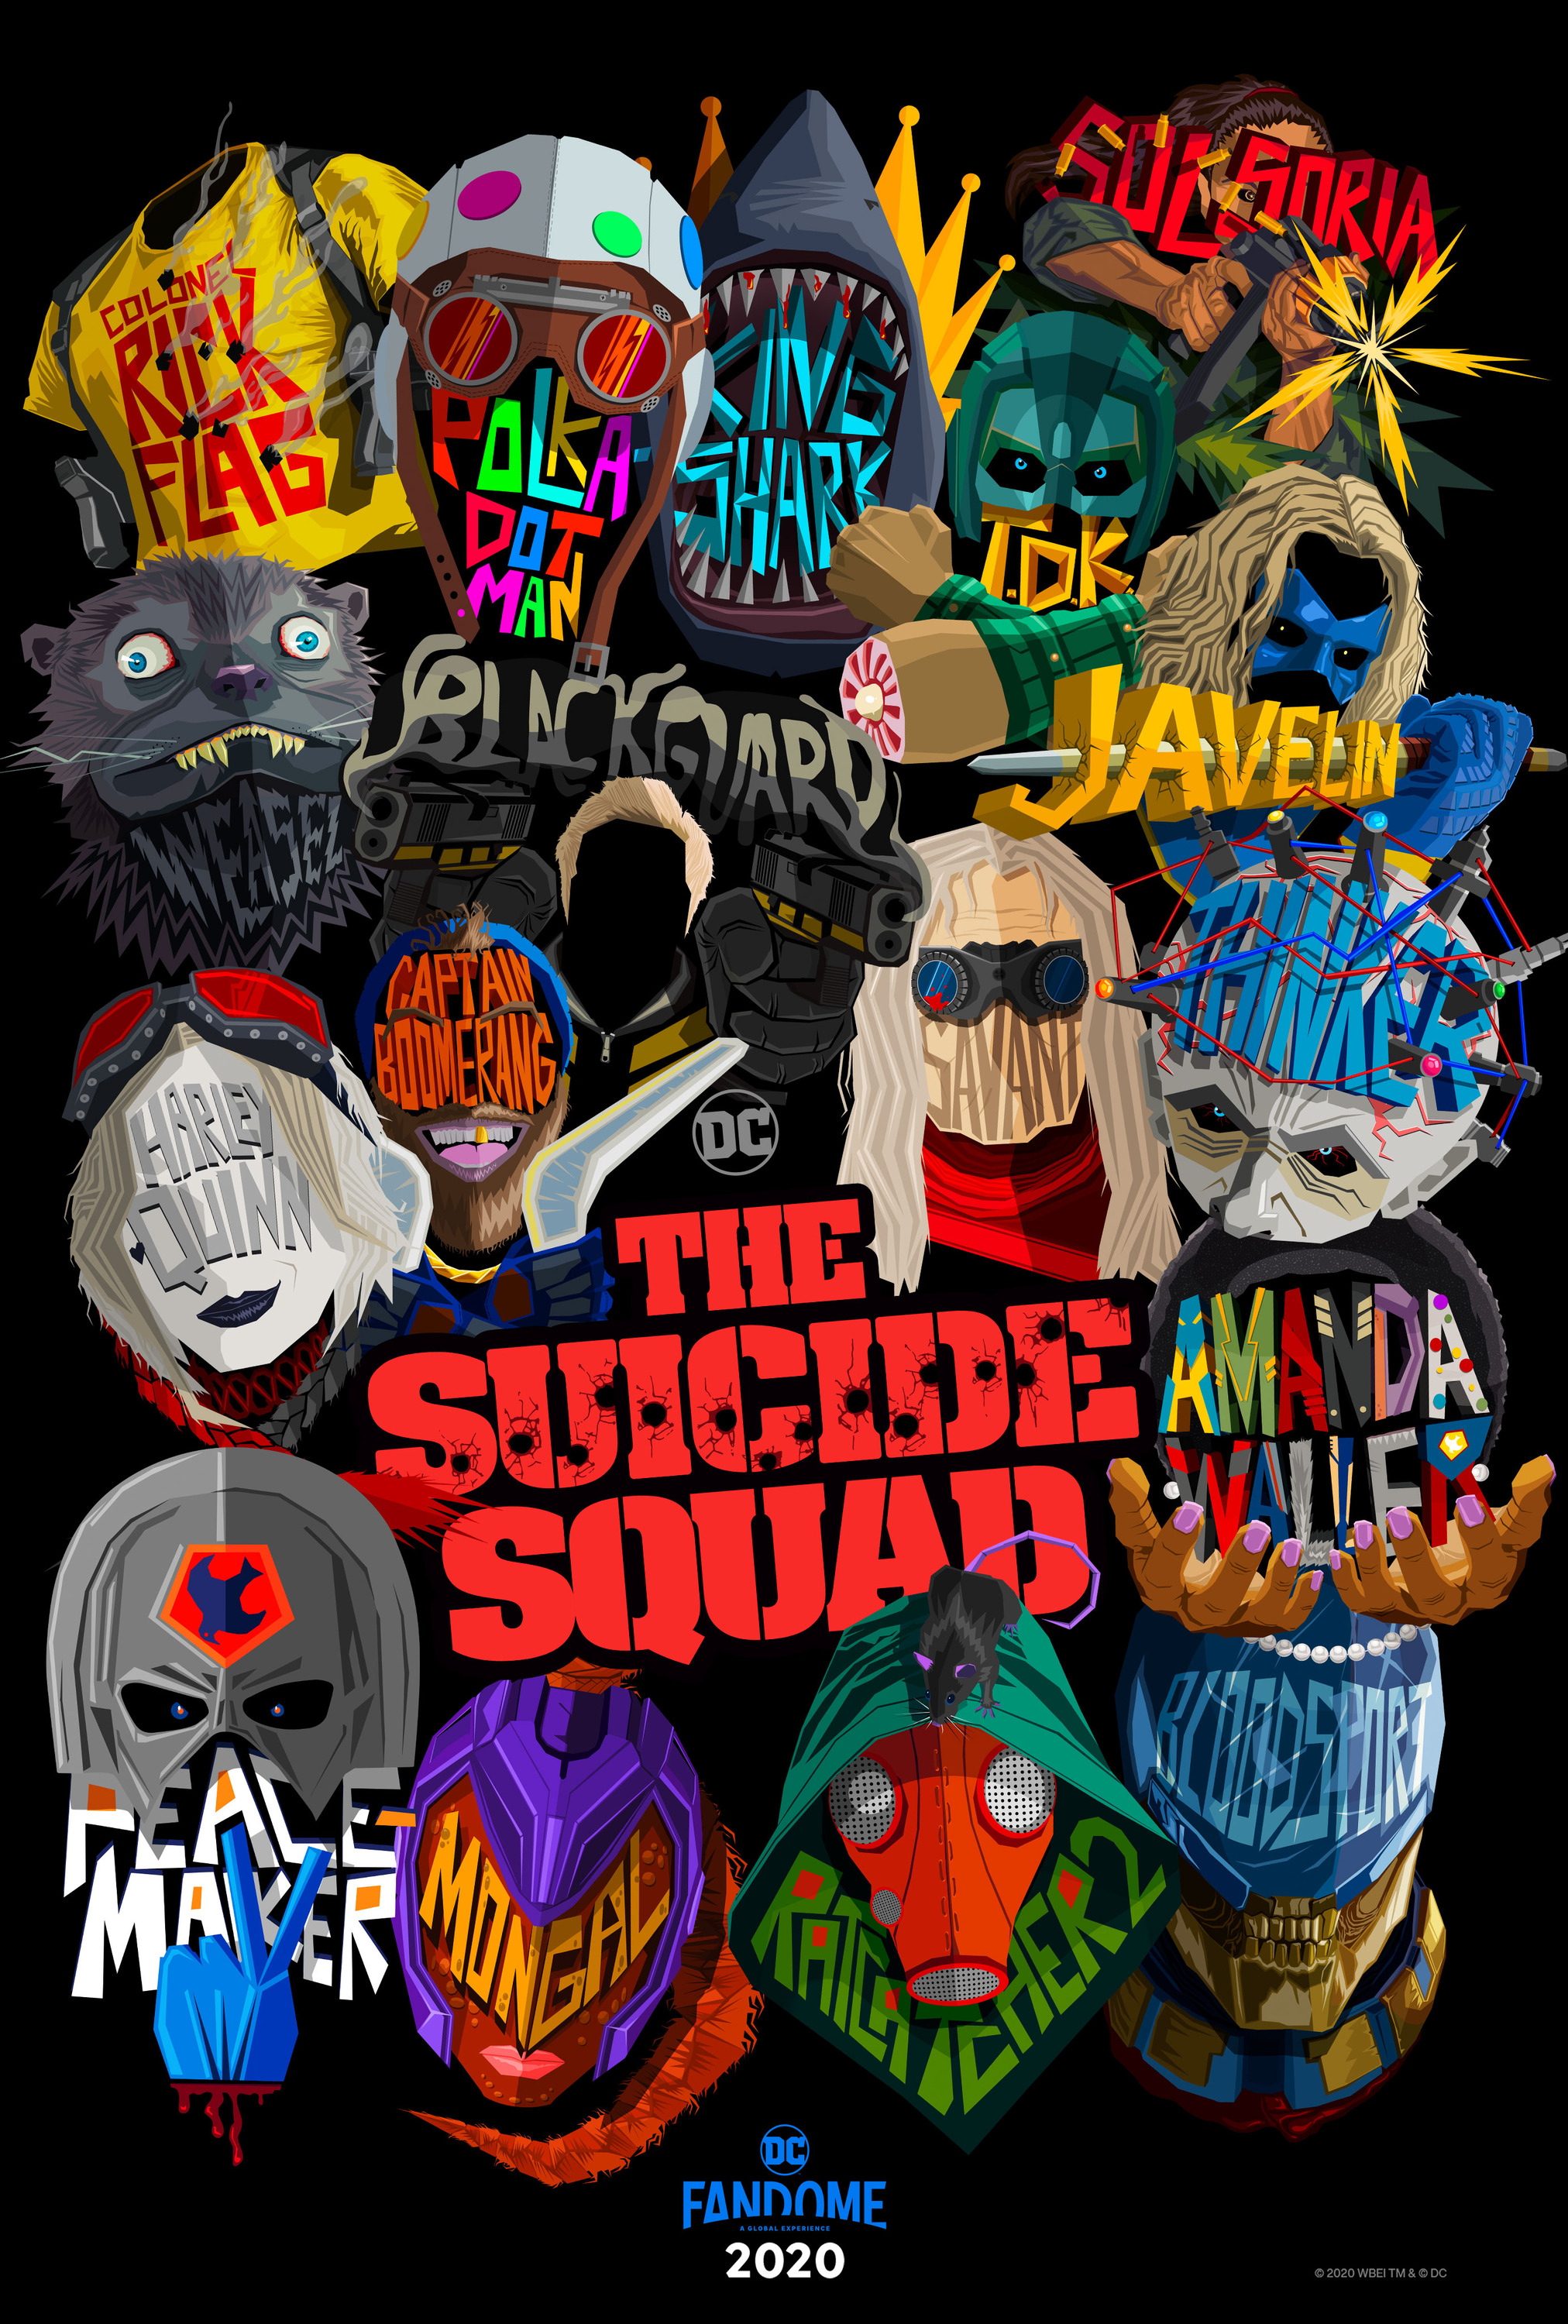 Suicide squad 2